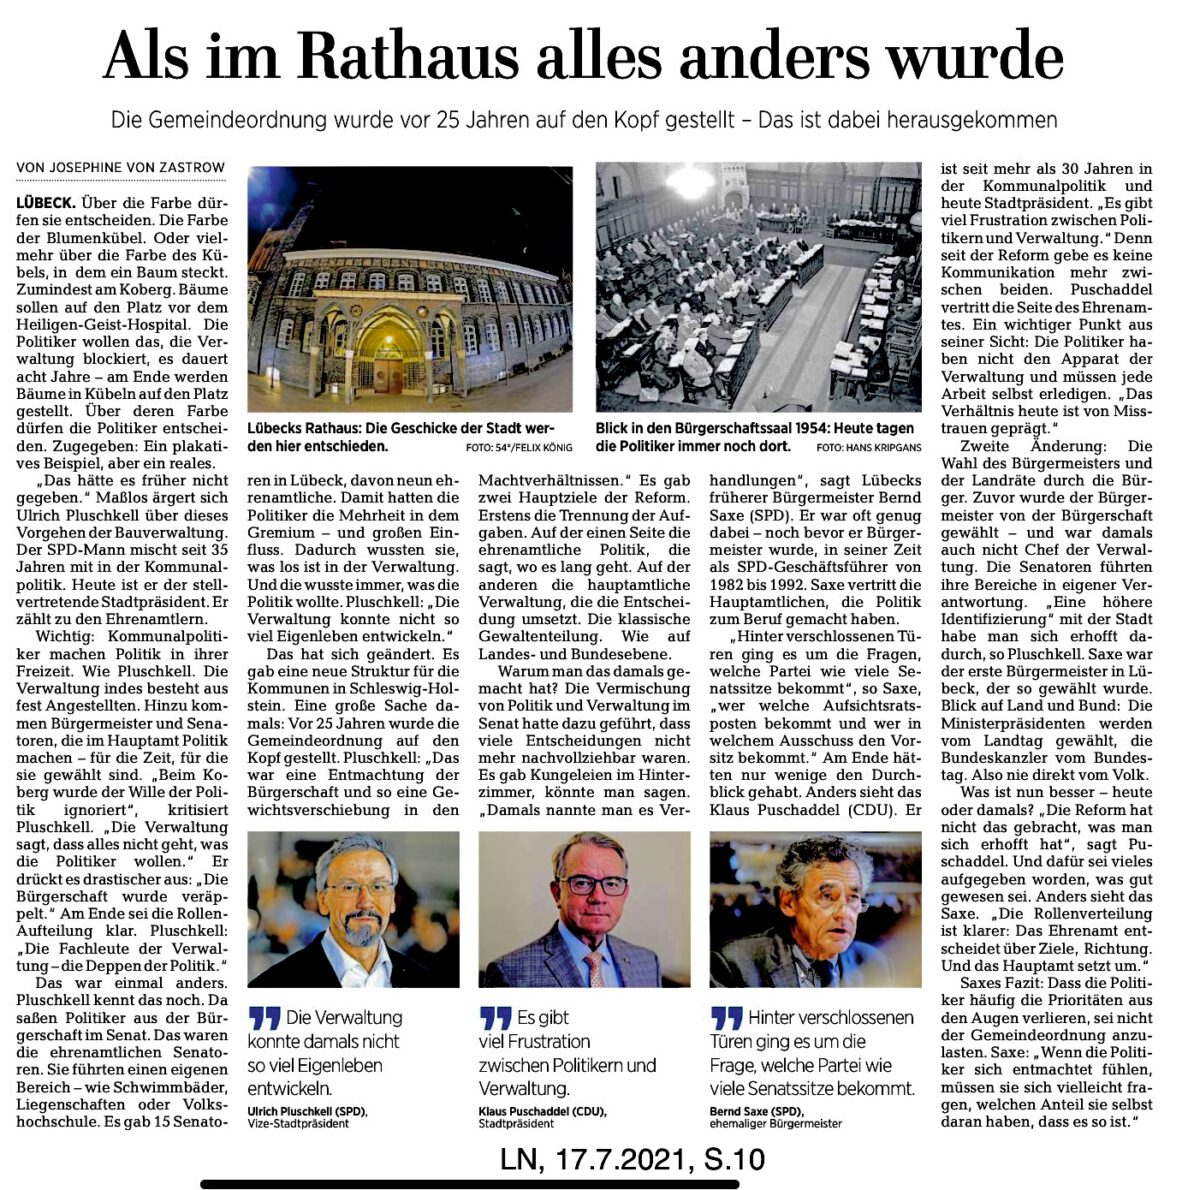 Das Märchen der Lübecker Nachrichten von der schönen alten Zeit und davon, dass vor 25 Jahren im Rathaus angeblich alles anders wurde